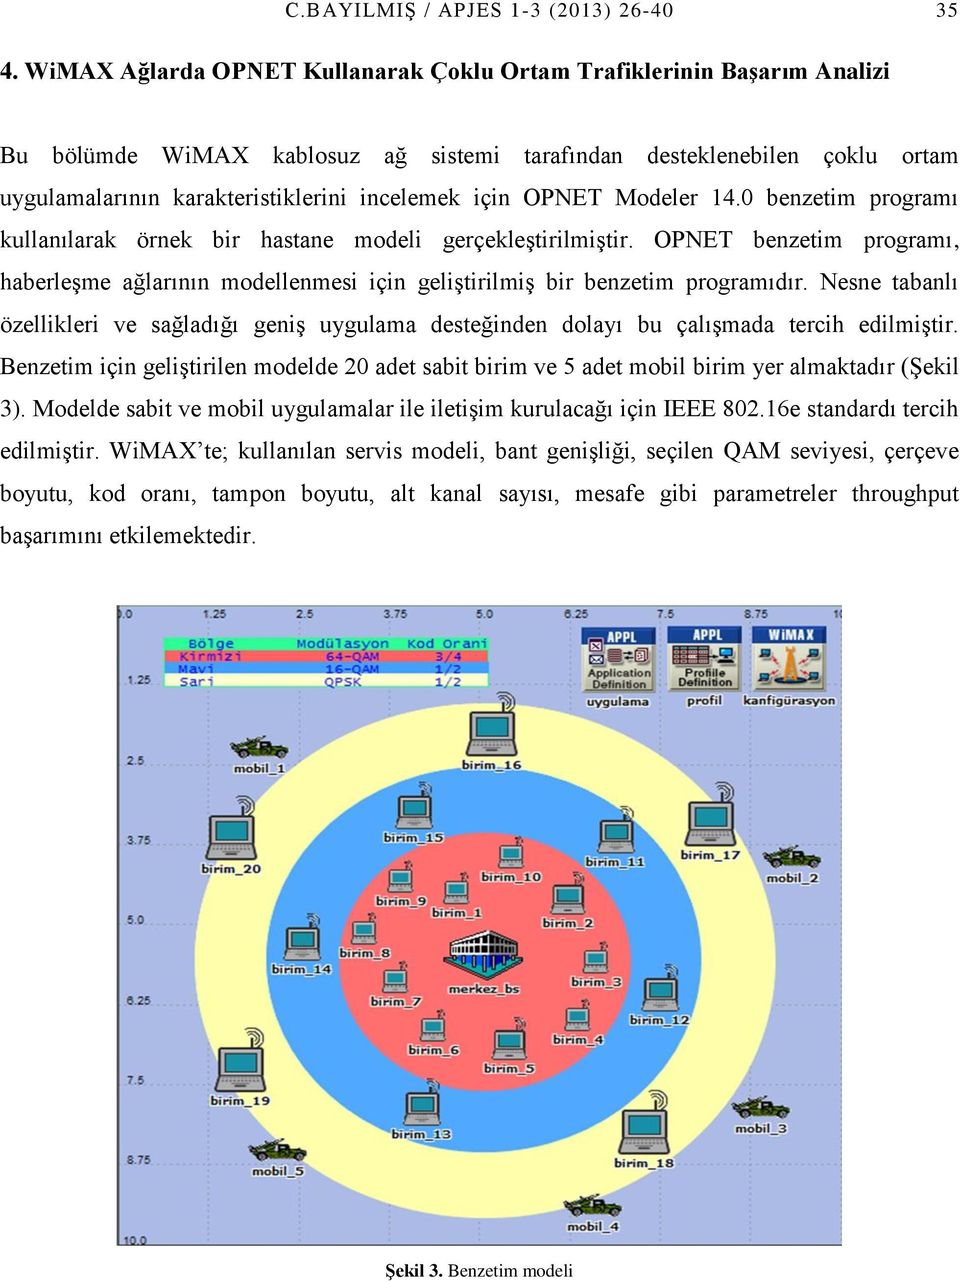 Modeler 14.0 benzetim programı kullanılarak örnek bir hastane modeli gerçekleştirilmiştir. OPNET benzetim programı, haberleşme ağlarının modellenmesi için geliştirilmiş bir benzetim programıdır.